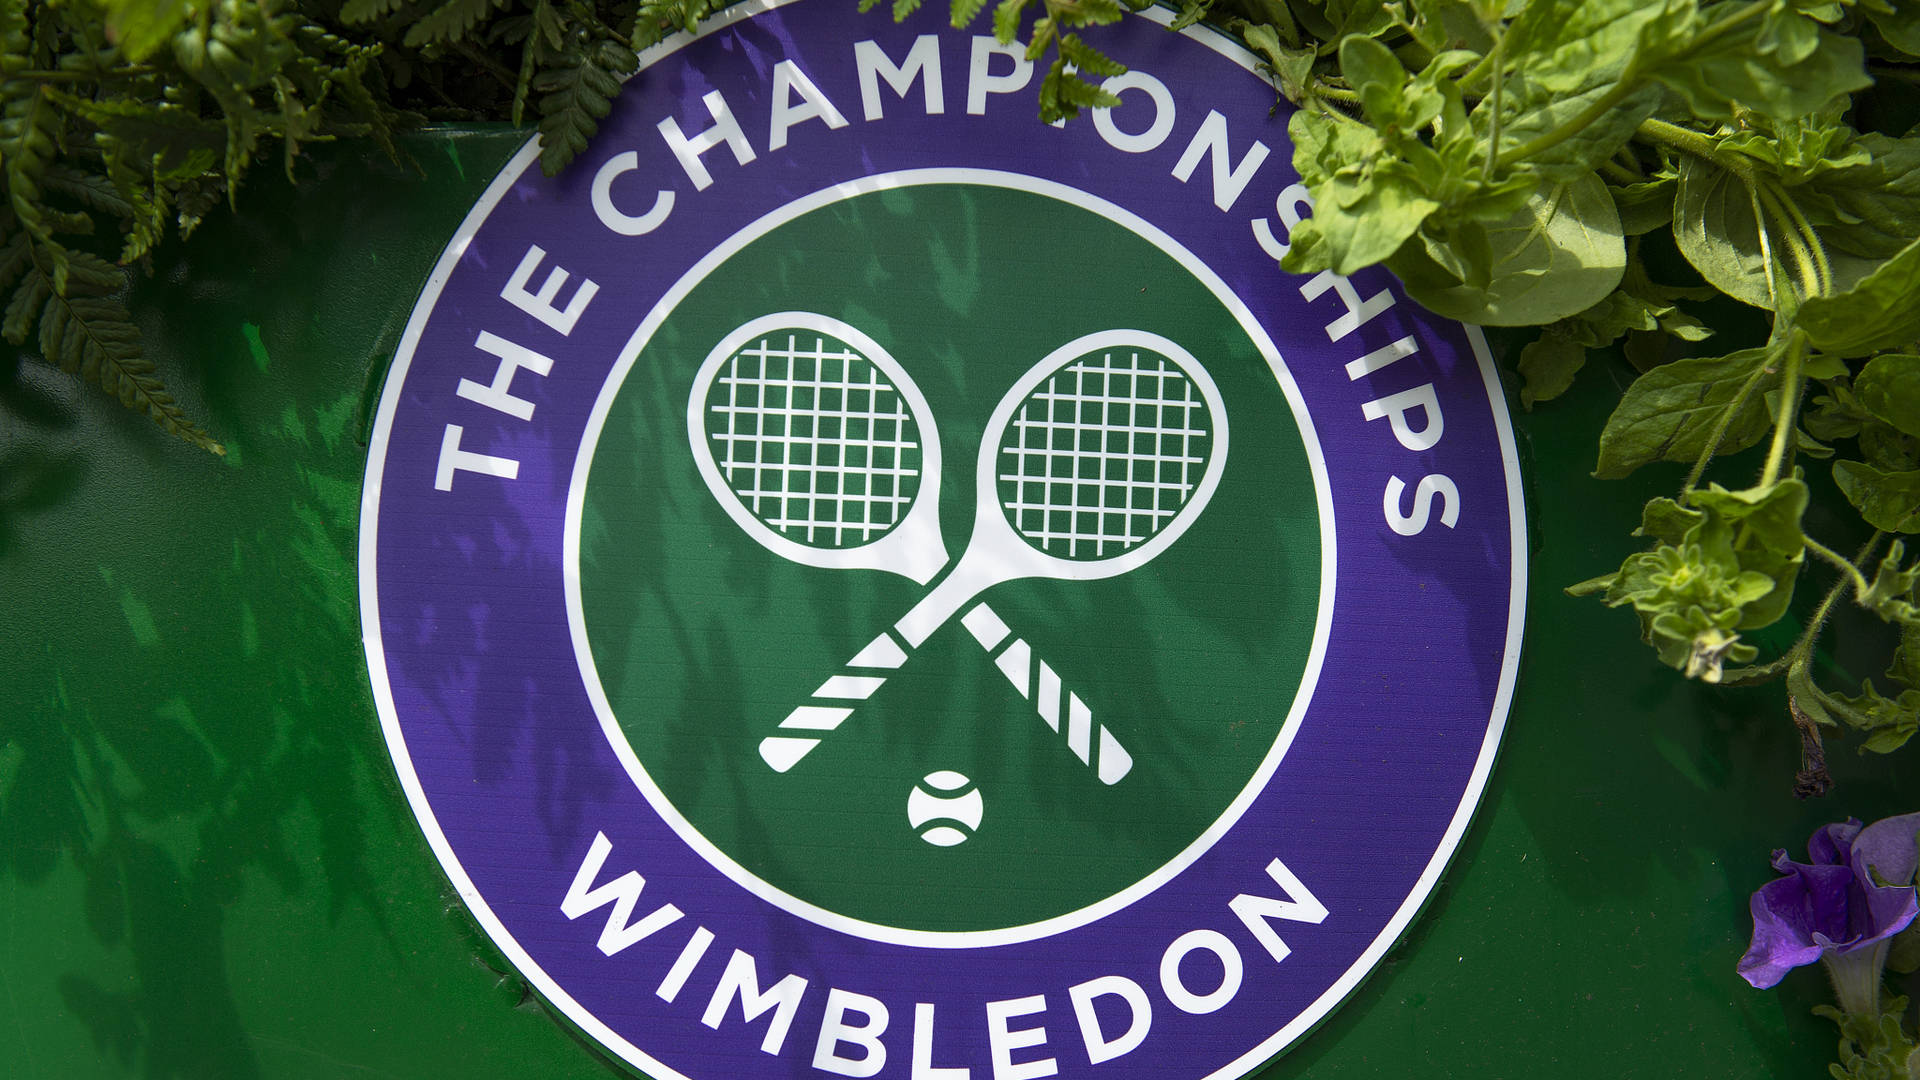 Wimbledonlogo Mit Weißem Tennisschläger Wallpaper